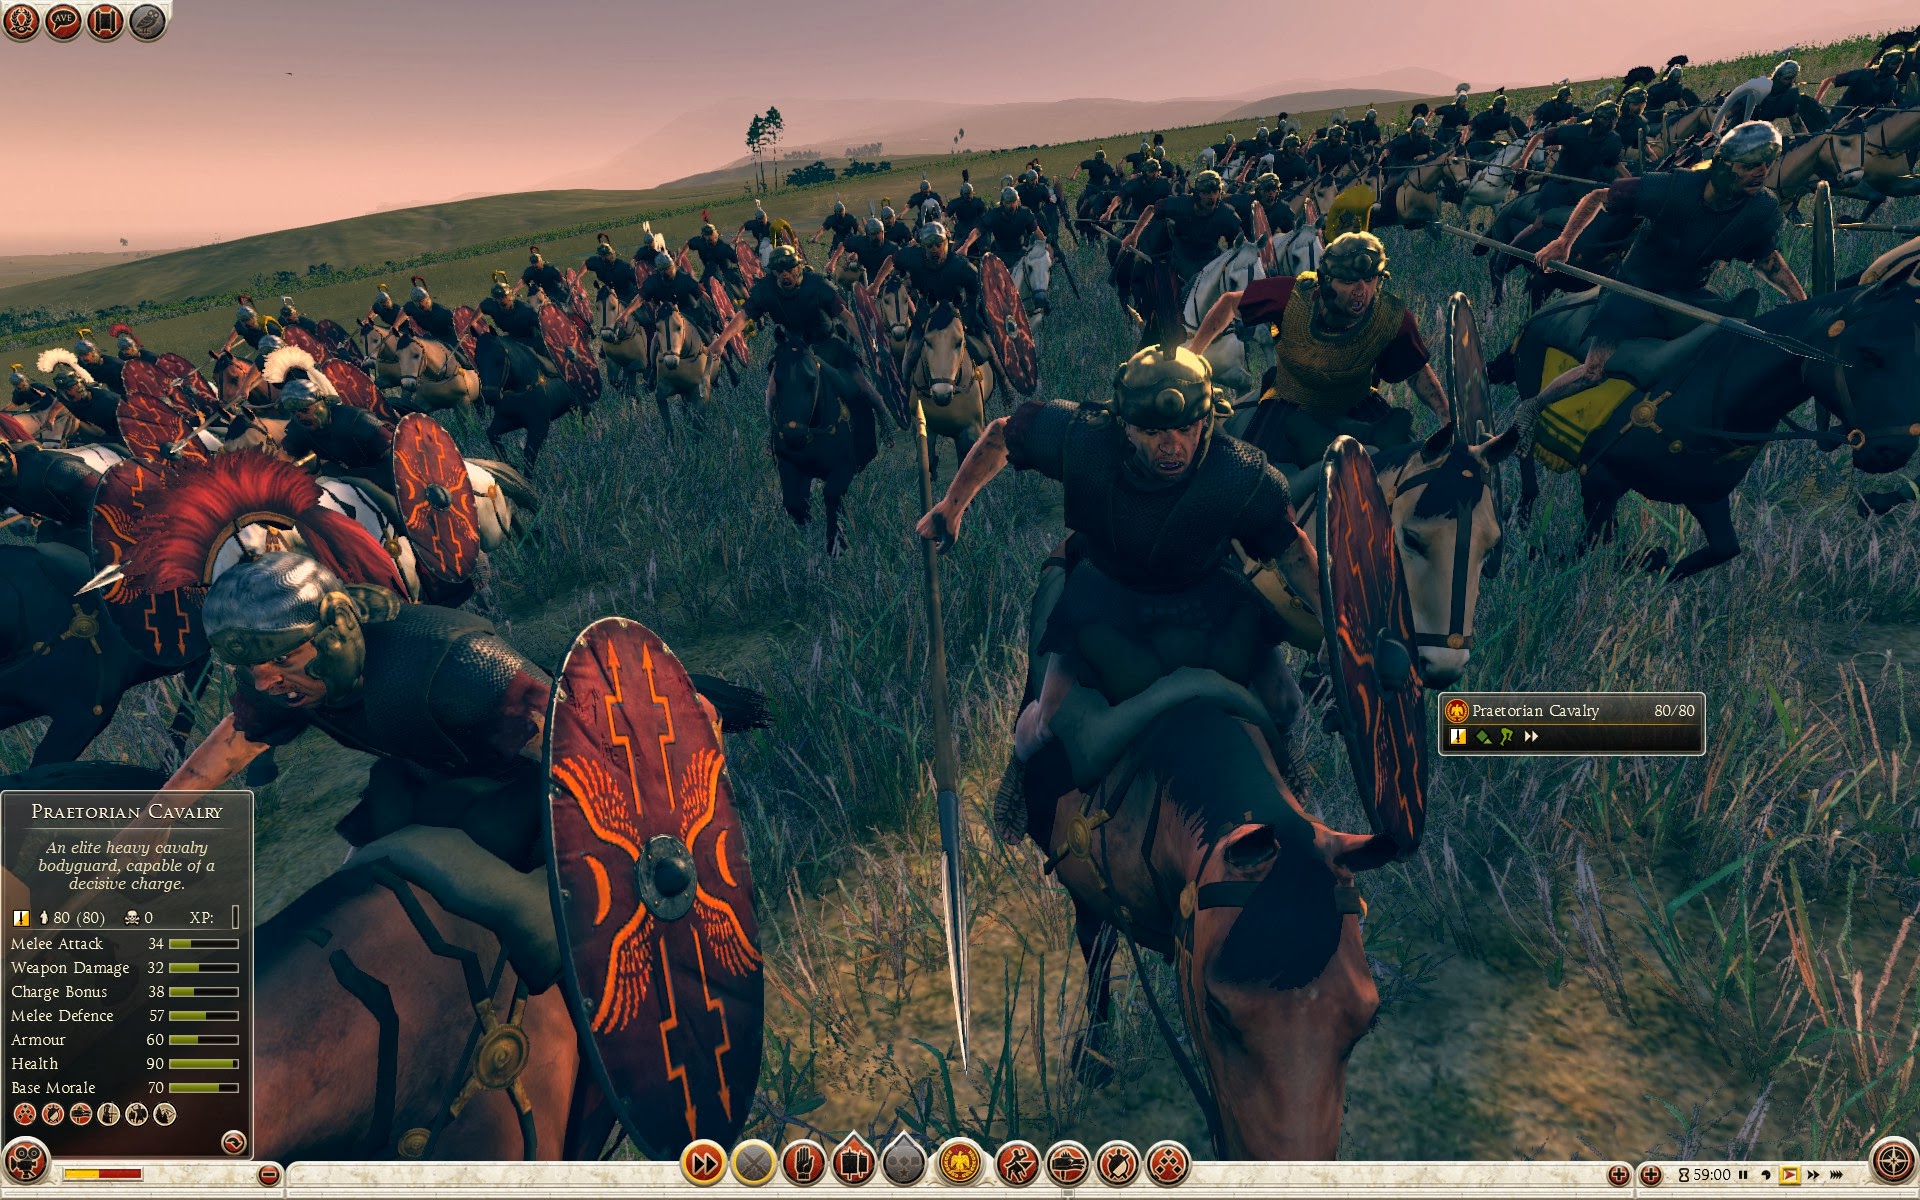 Praetorian Cavalry